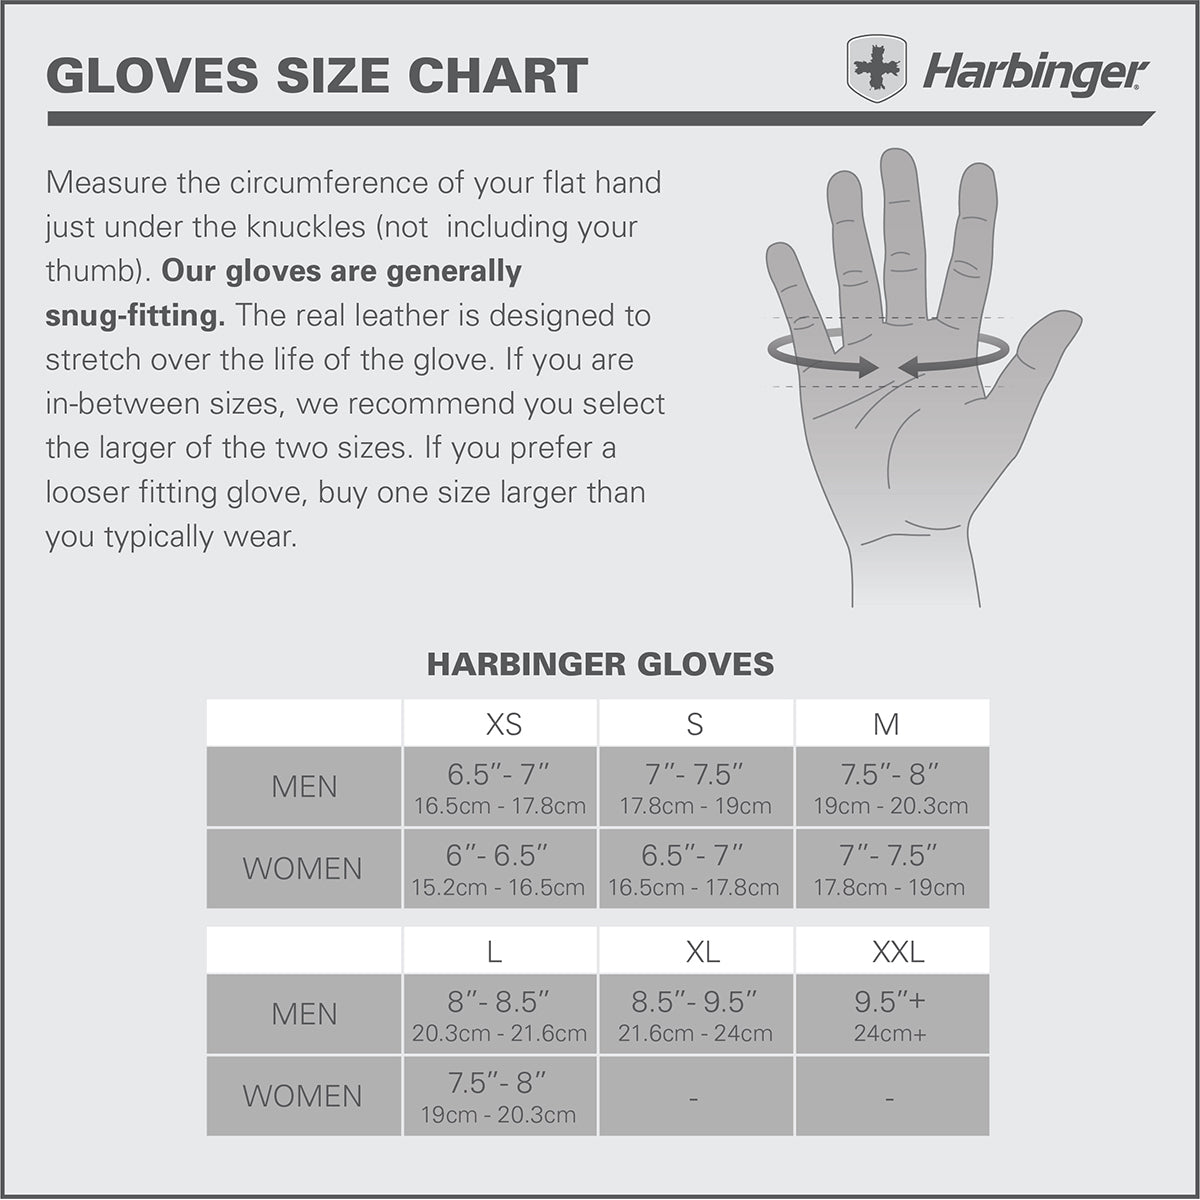 Harbinger Women's Power Weight Lifting Gloves - Periwinkle Harbinger